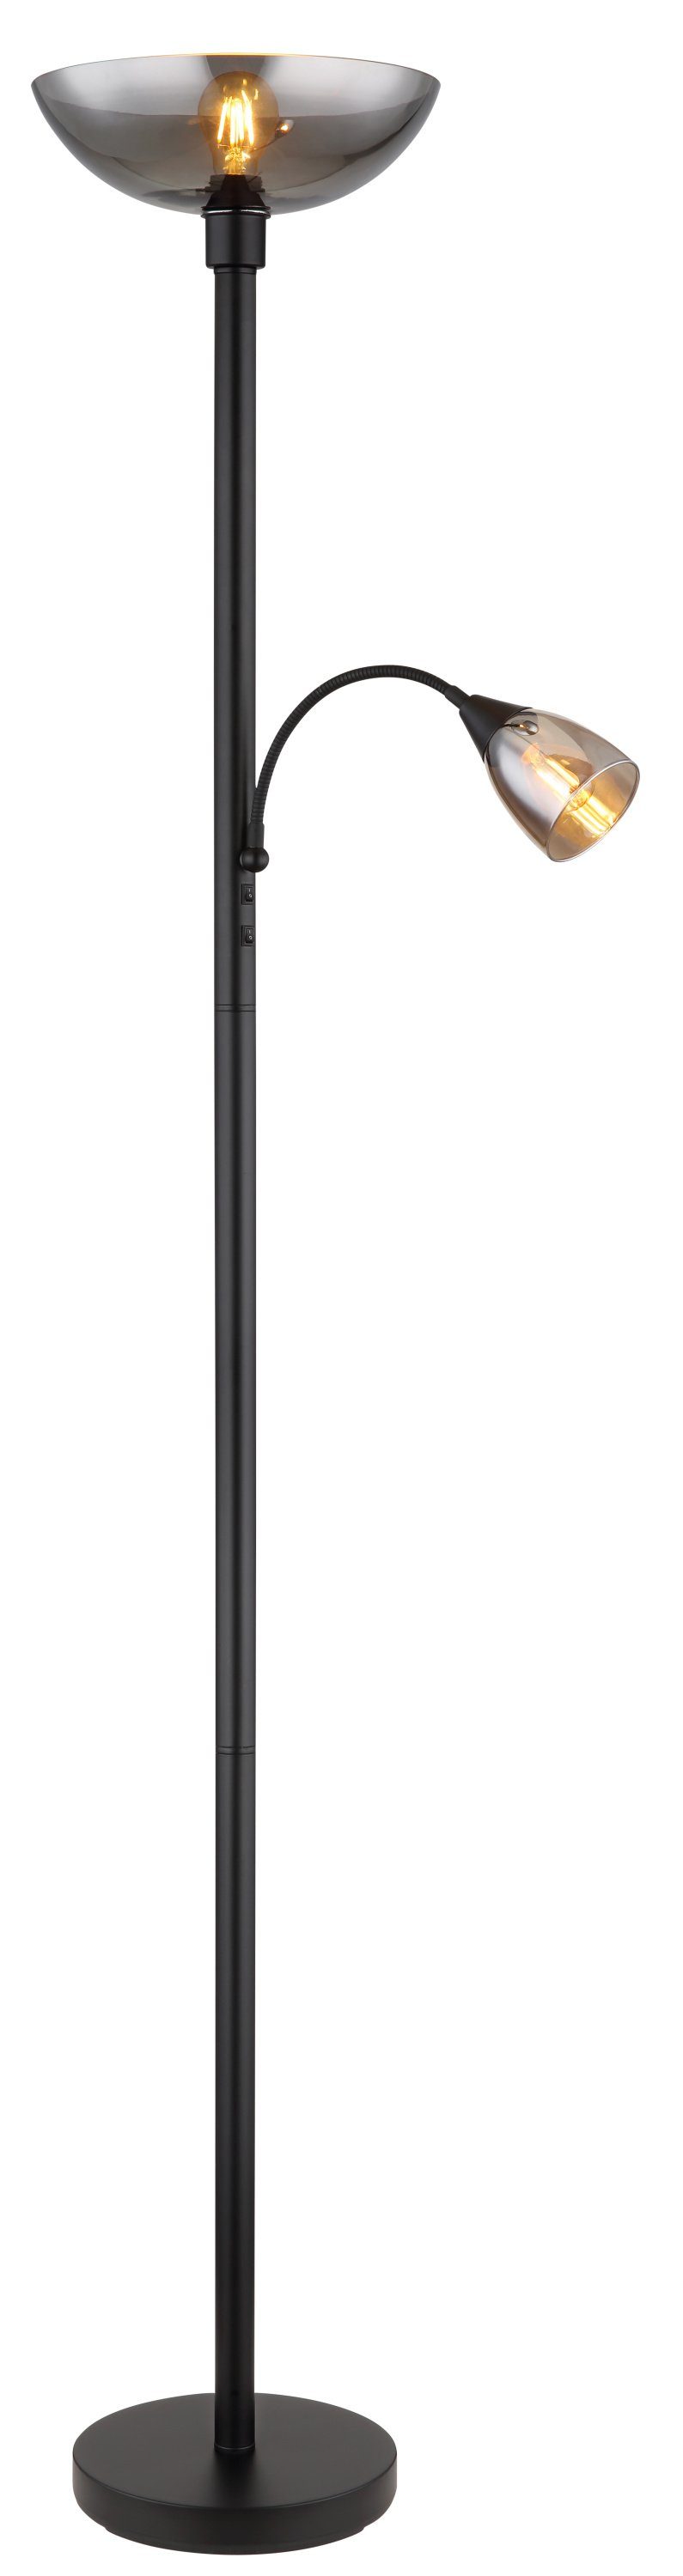 Stehleuchte, schwarz DH BLADE 30x178 cm) cm Lighting LEUCHTEN 30x178 Stehlampe GLOBO (DH Stehleuchte GLOBO